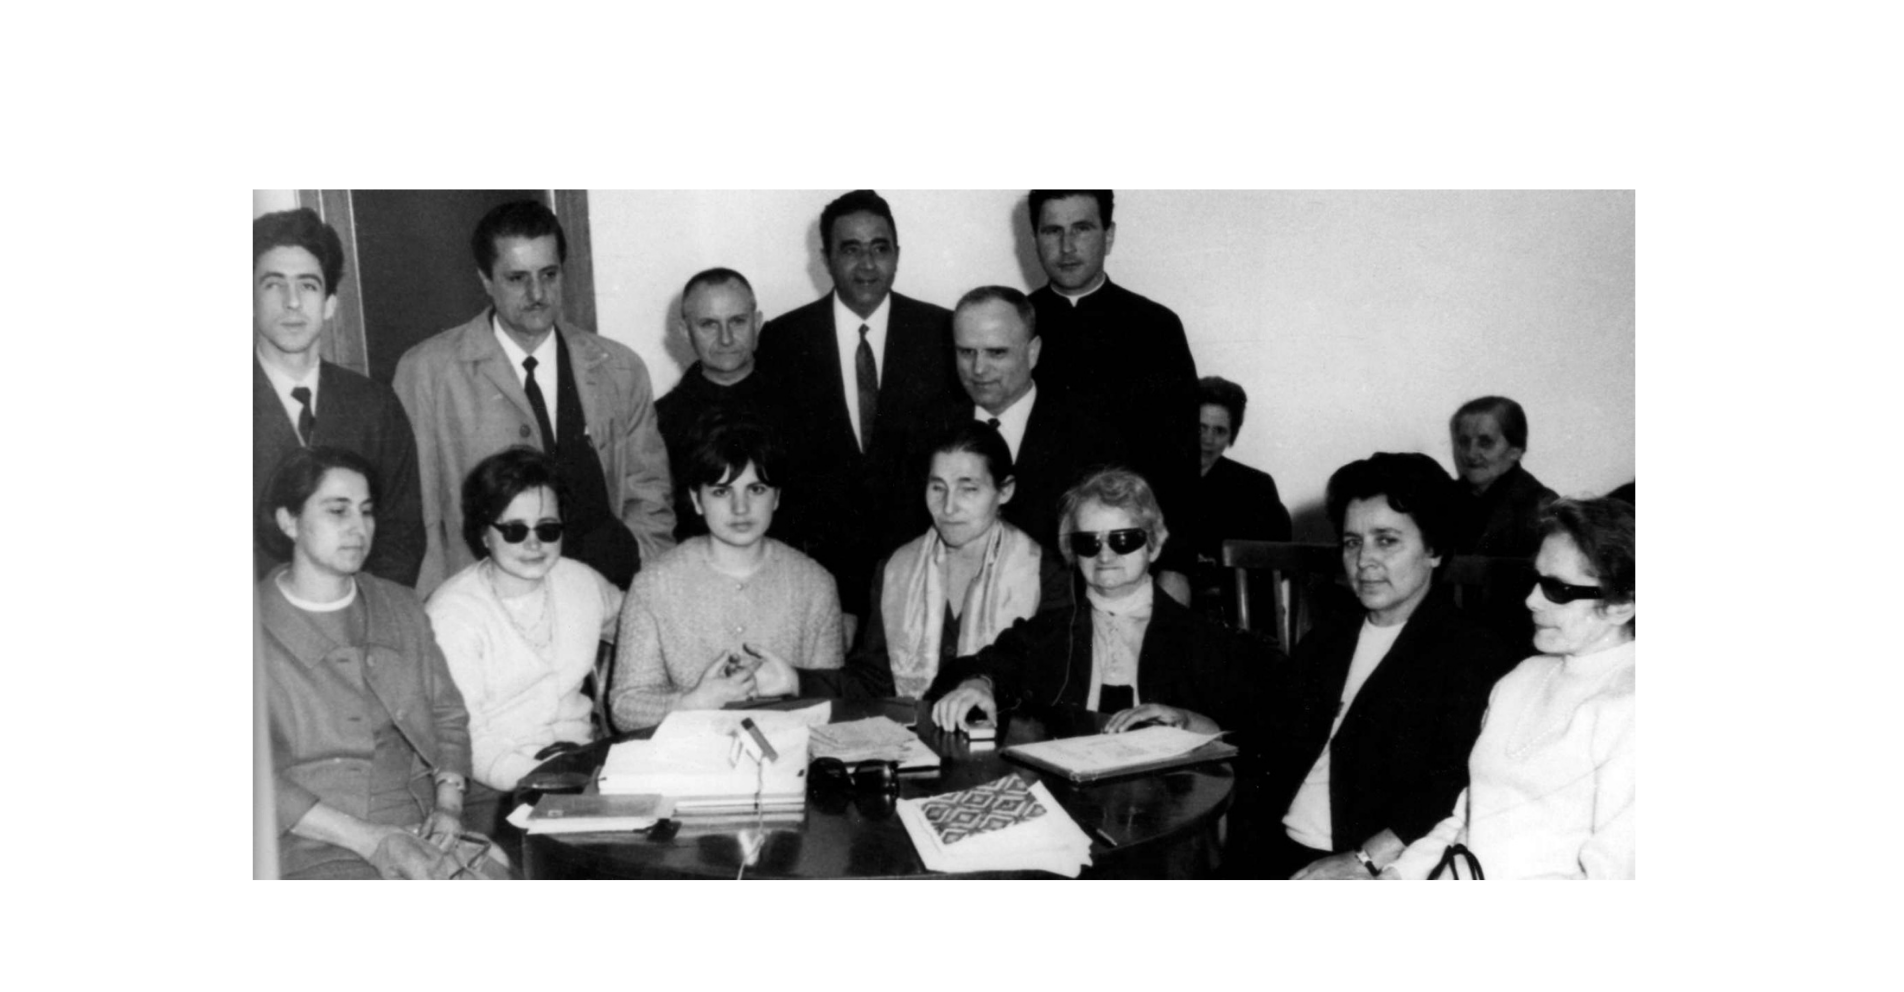 Foto di gruppo dei fondatori della Lega del Filo d'Oro. Sette donne tra cui anche Sabina Santilli, sono sedute attorno ad un tavolo. Dietro di loro sei uomini. L'immagine è in bianco e nero.